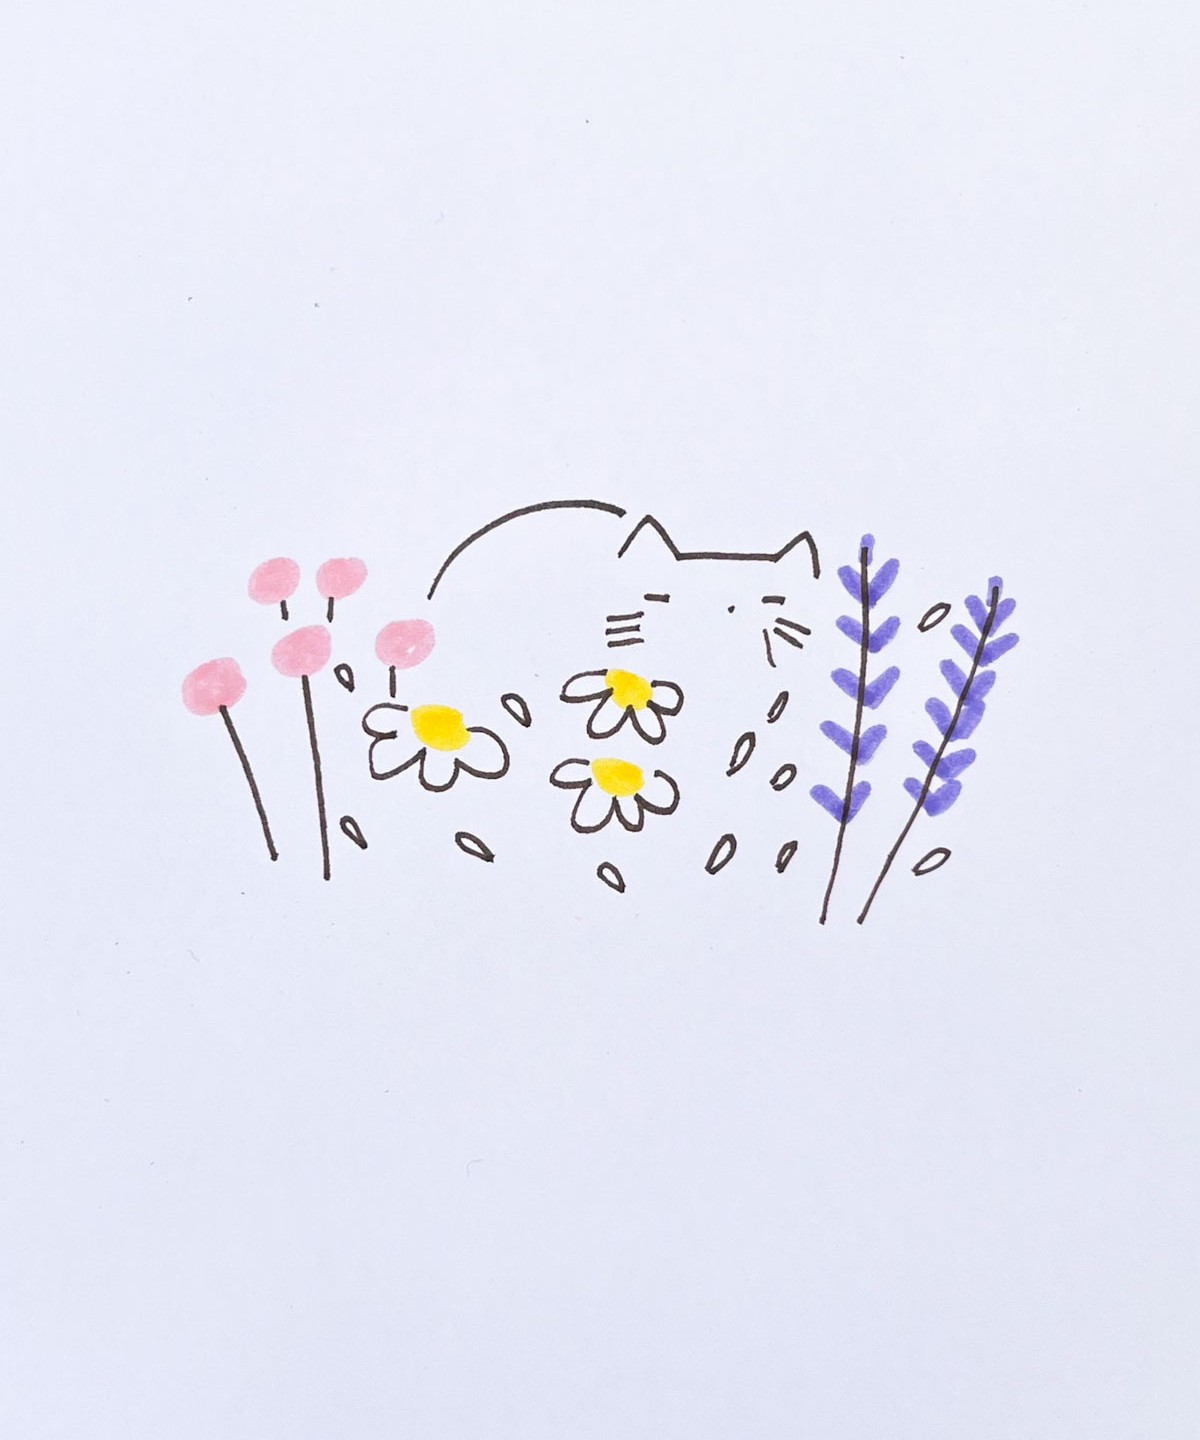 Cat in Flower Field